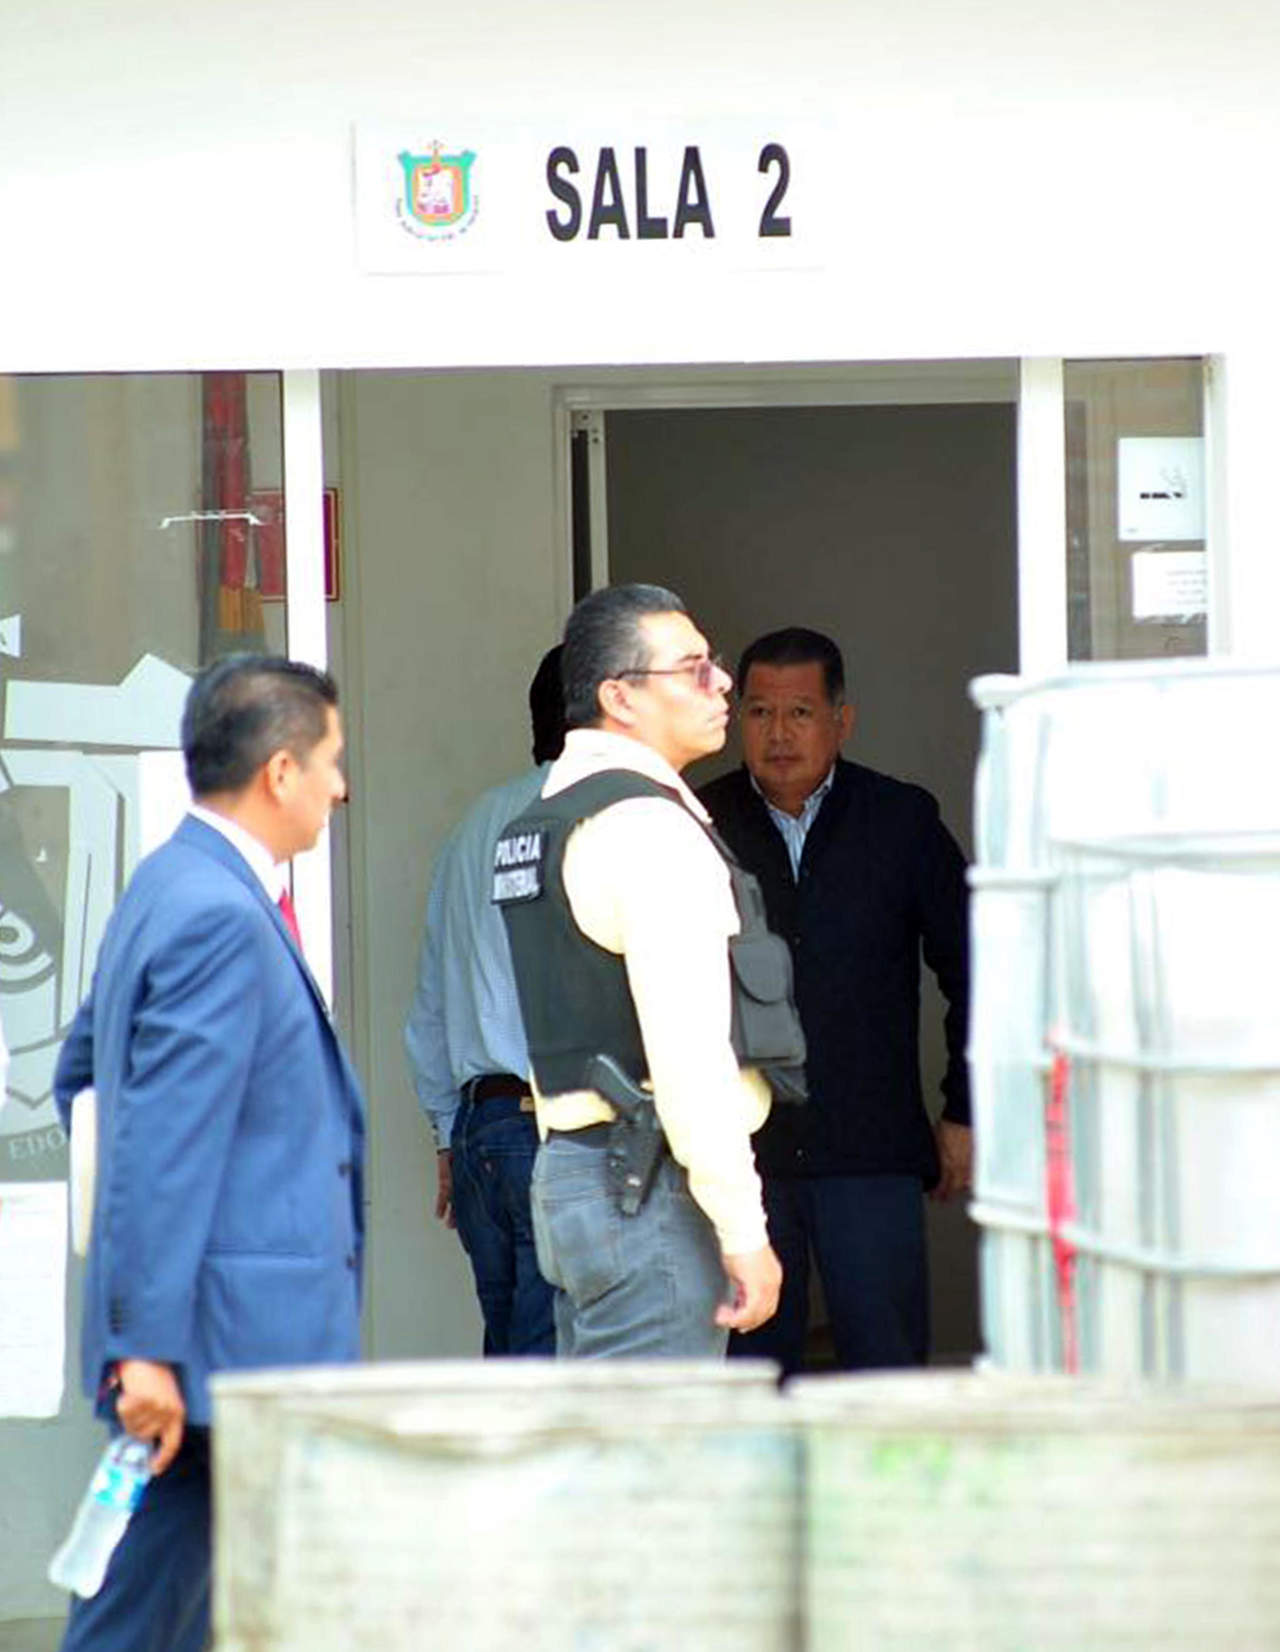 El exmandatario estatal fue puesto a disposición de un Juez de Control quien le dictó como medida cautelar pasar un año en prisión en tanto se lleva su juicio al ser acusado de ayudar a huir al ex gobernador Javier Duarte de Ochoa. (EFE) 